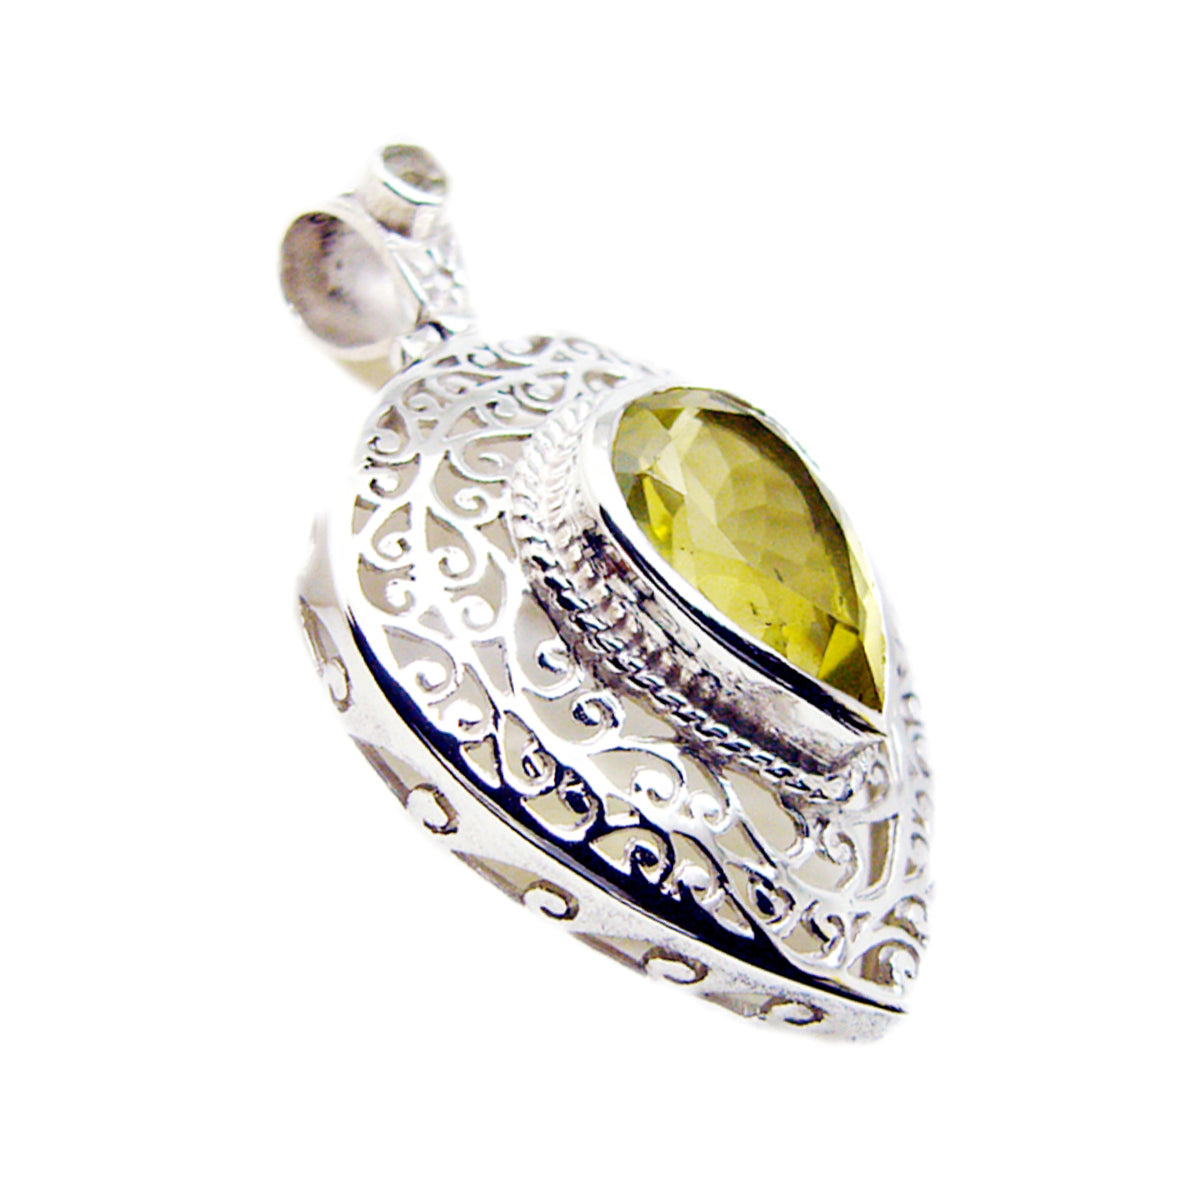 riyo великолепный драгоценный камень груша ограненный желтый лимонный кварц кулон из стерлингового серебра 1000 пробы подарок для подруги